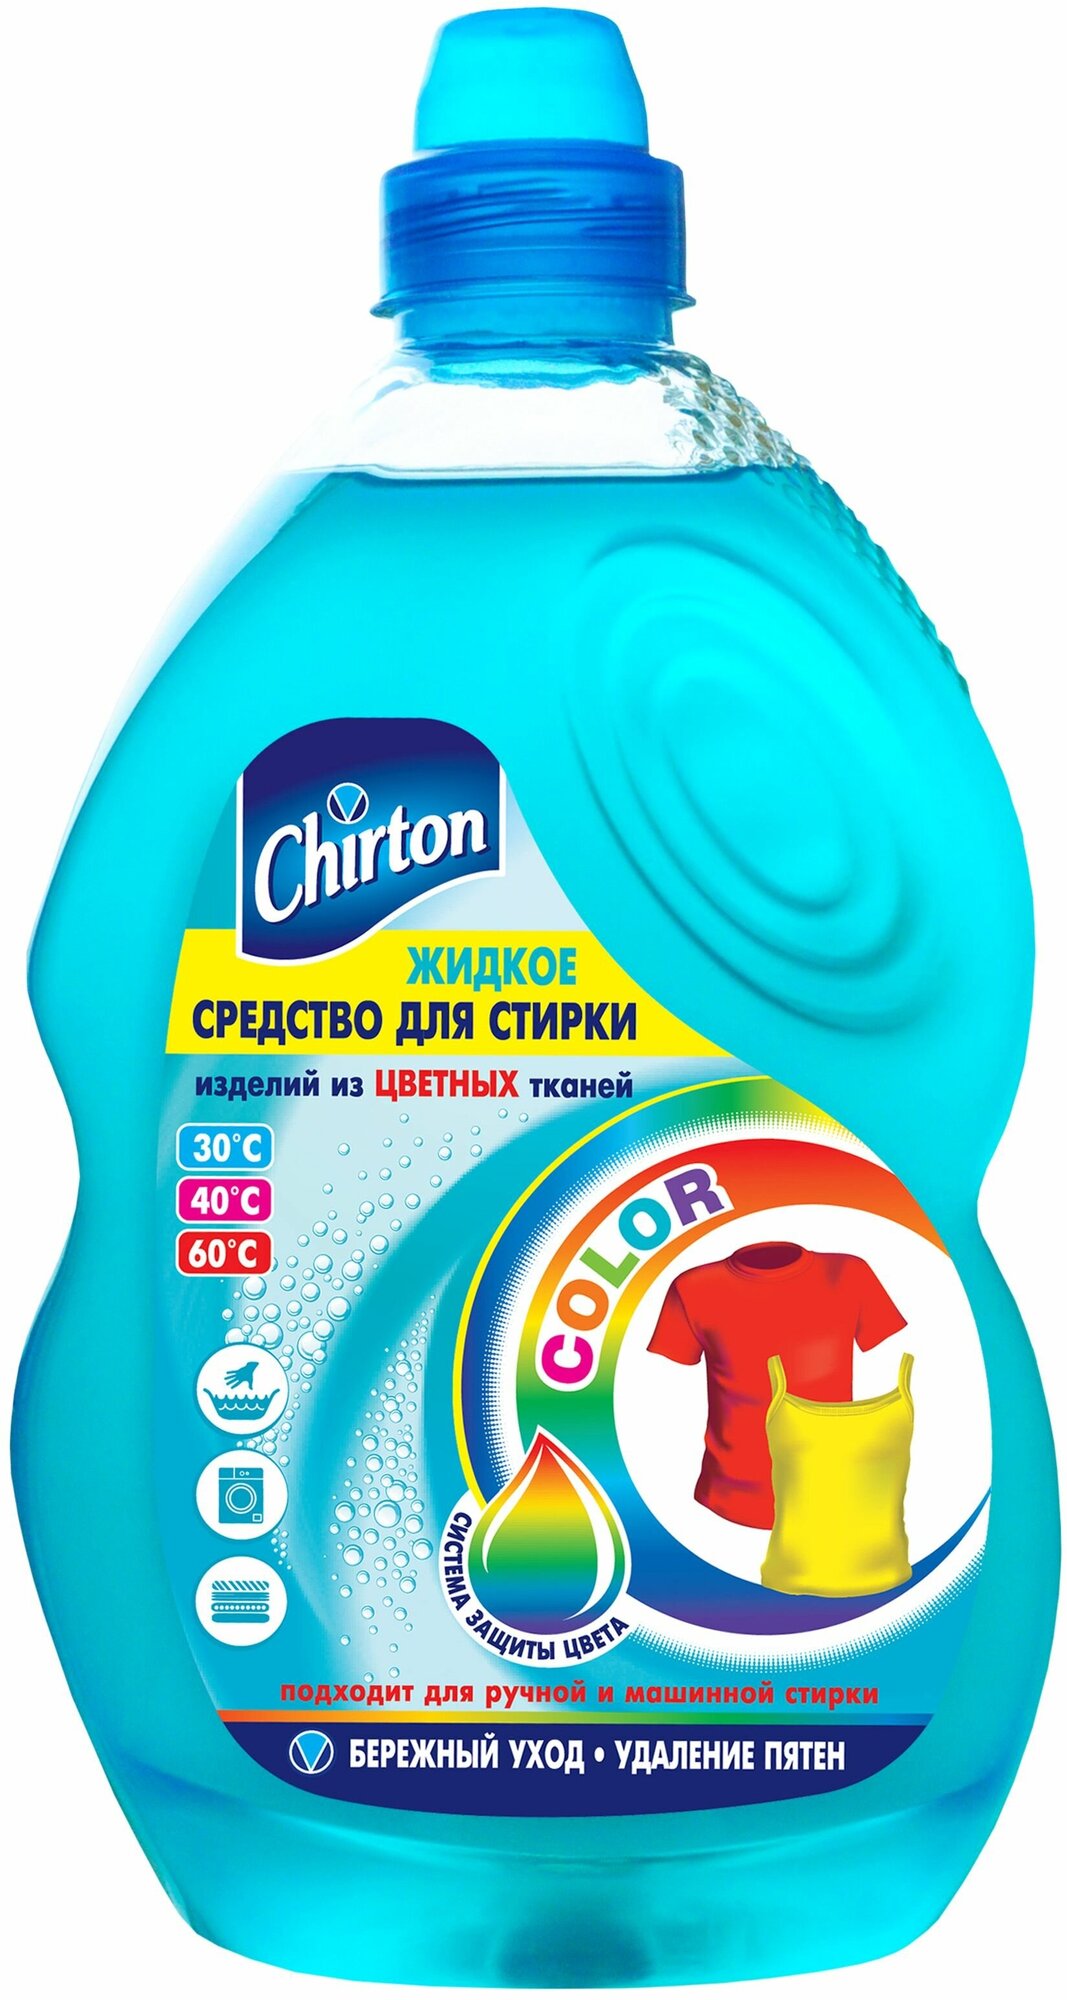 Средство для стирки Chirton для цветного белья и сильнозагрязненных вещей, 1.3 л